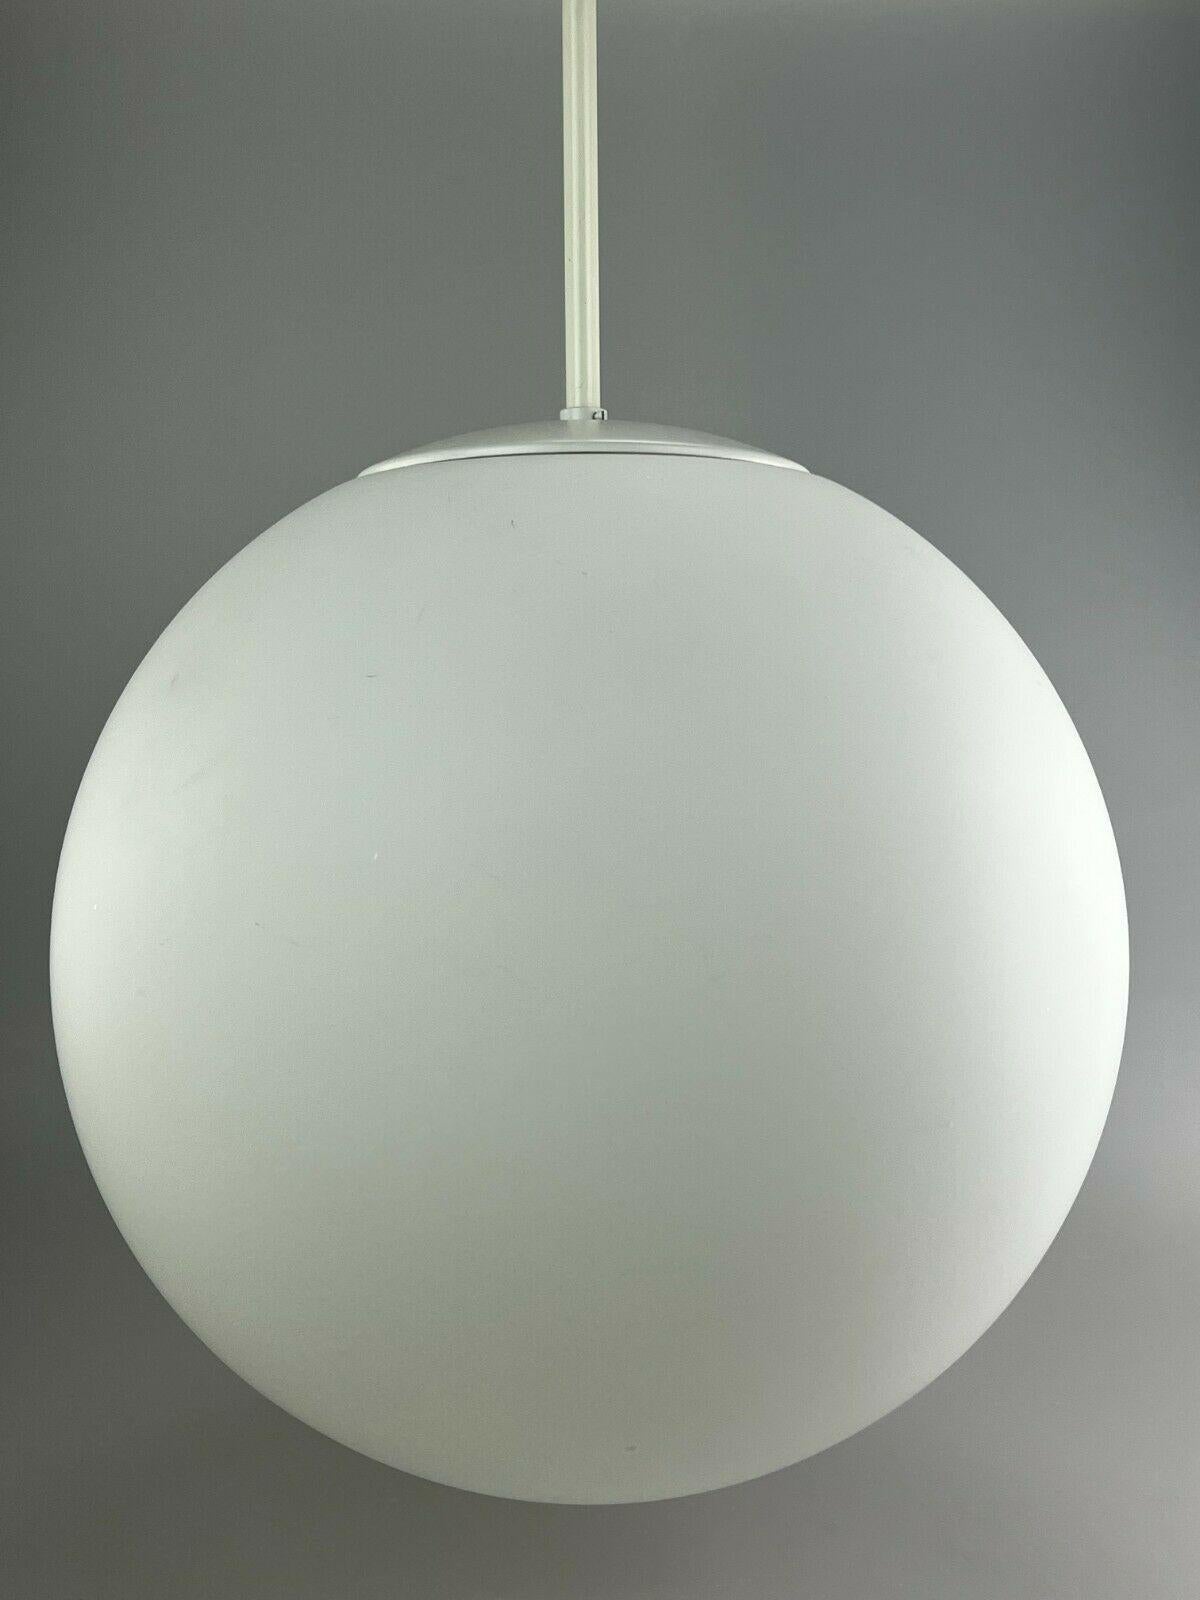 Metal XXL 60s 70s Lamp Light Ceiling Lamp Limburg Spherical Lamp Ball Design  For Sale